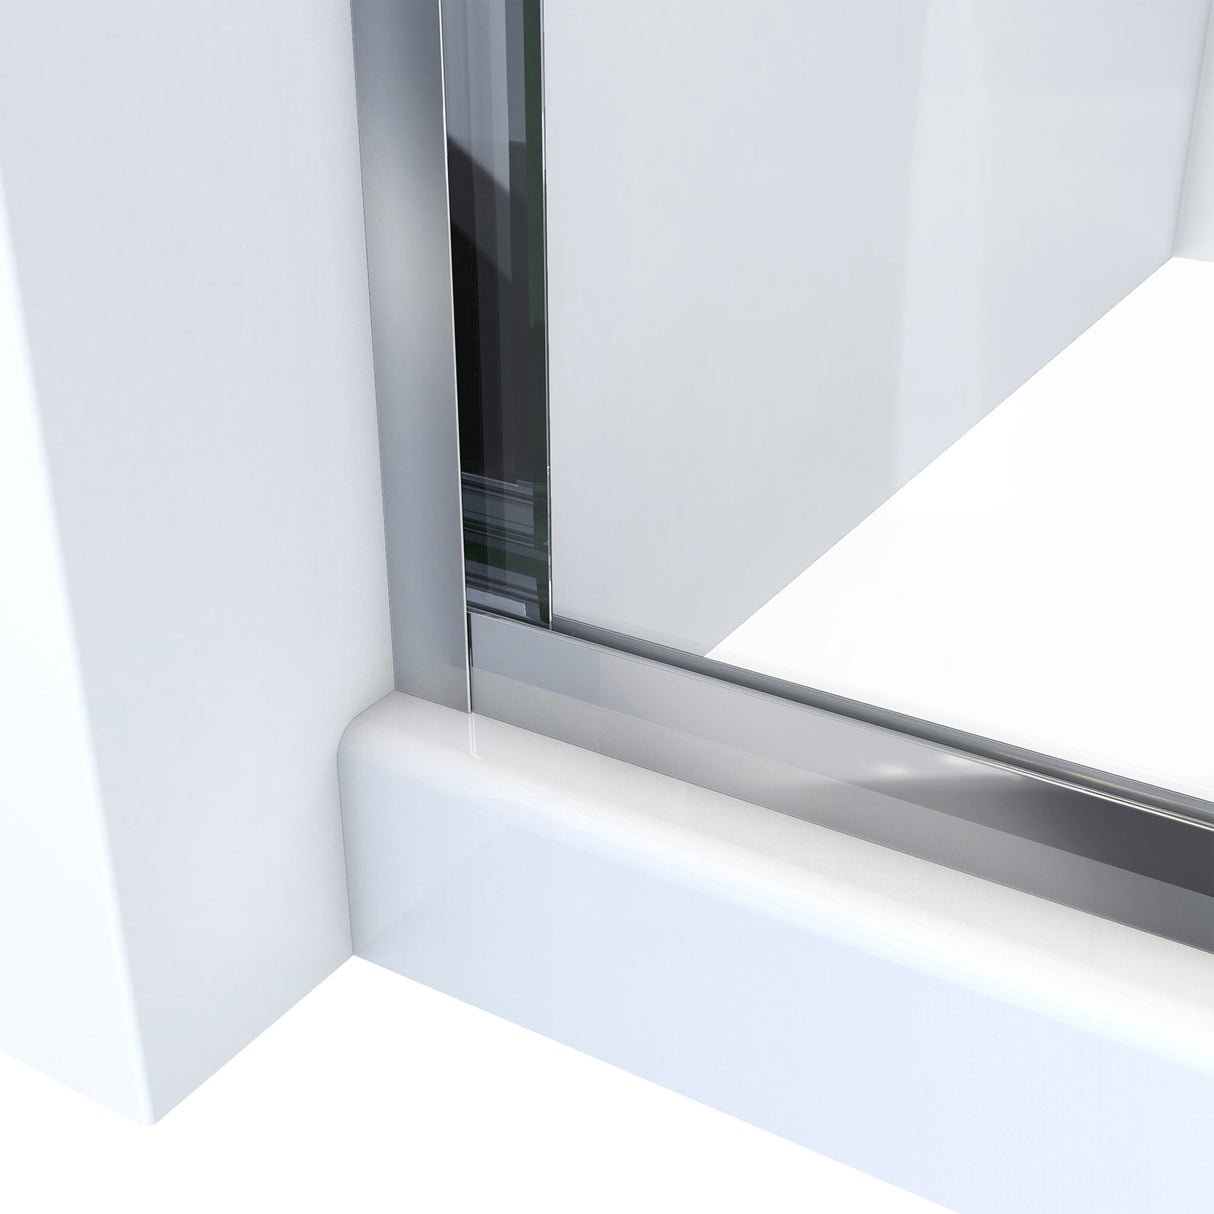 DreamLine Alliance Pro HV 56-60 in. W x 76 1/2 in. H Semi-Frameless Sliding Shower Door in Chrome and Clear Glass